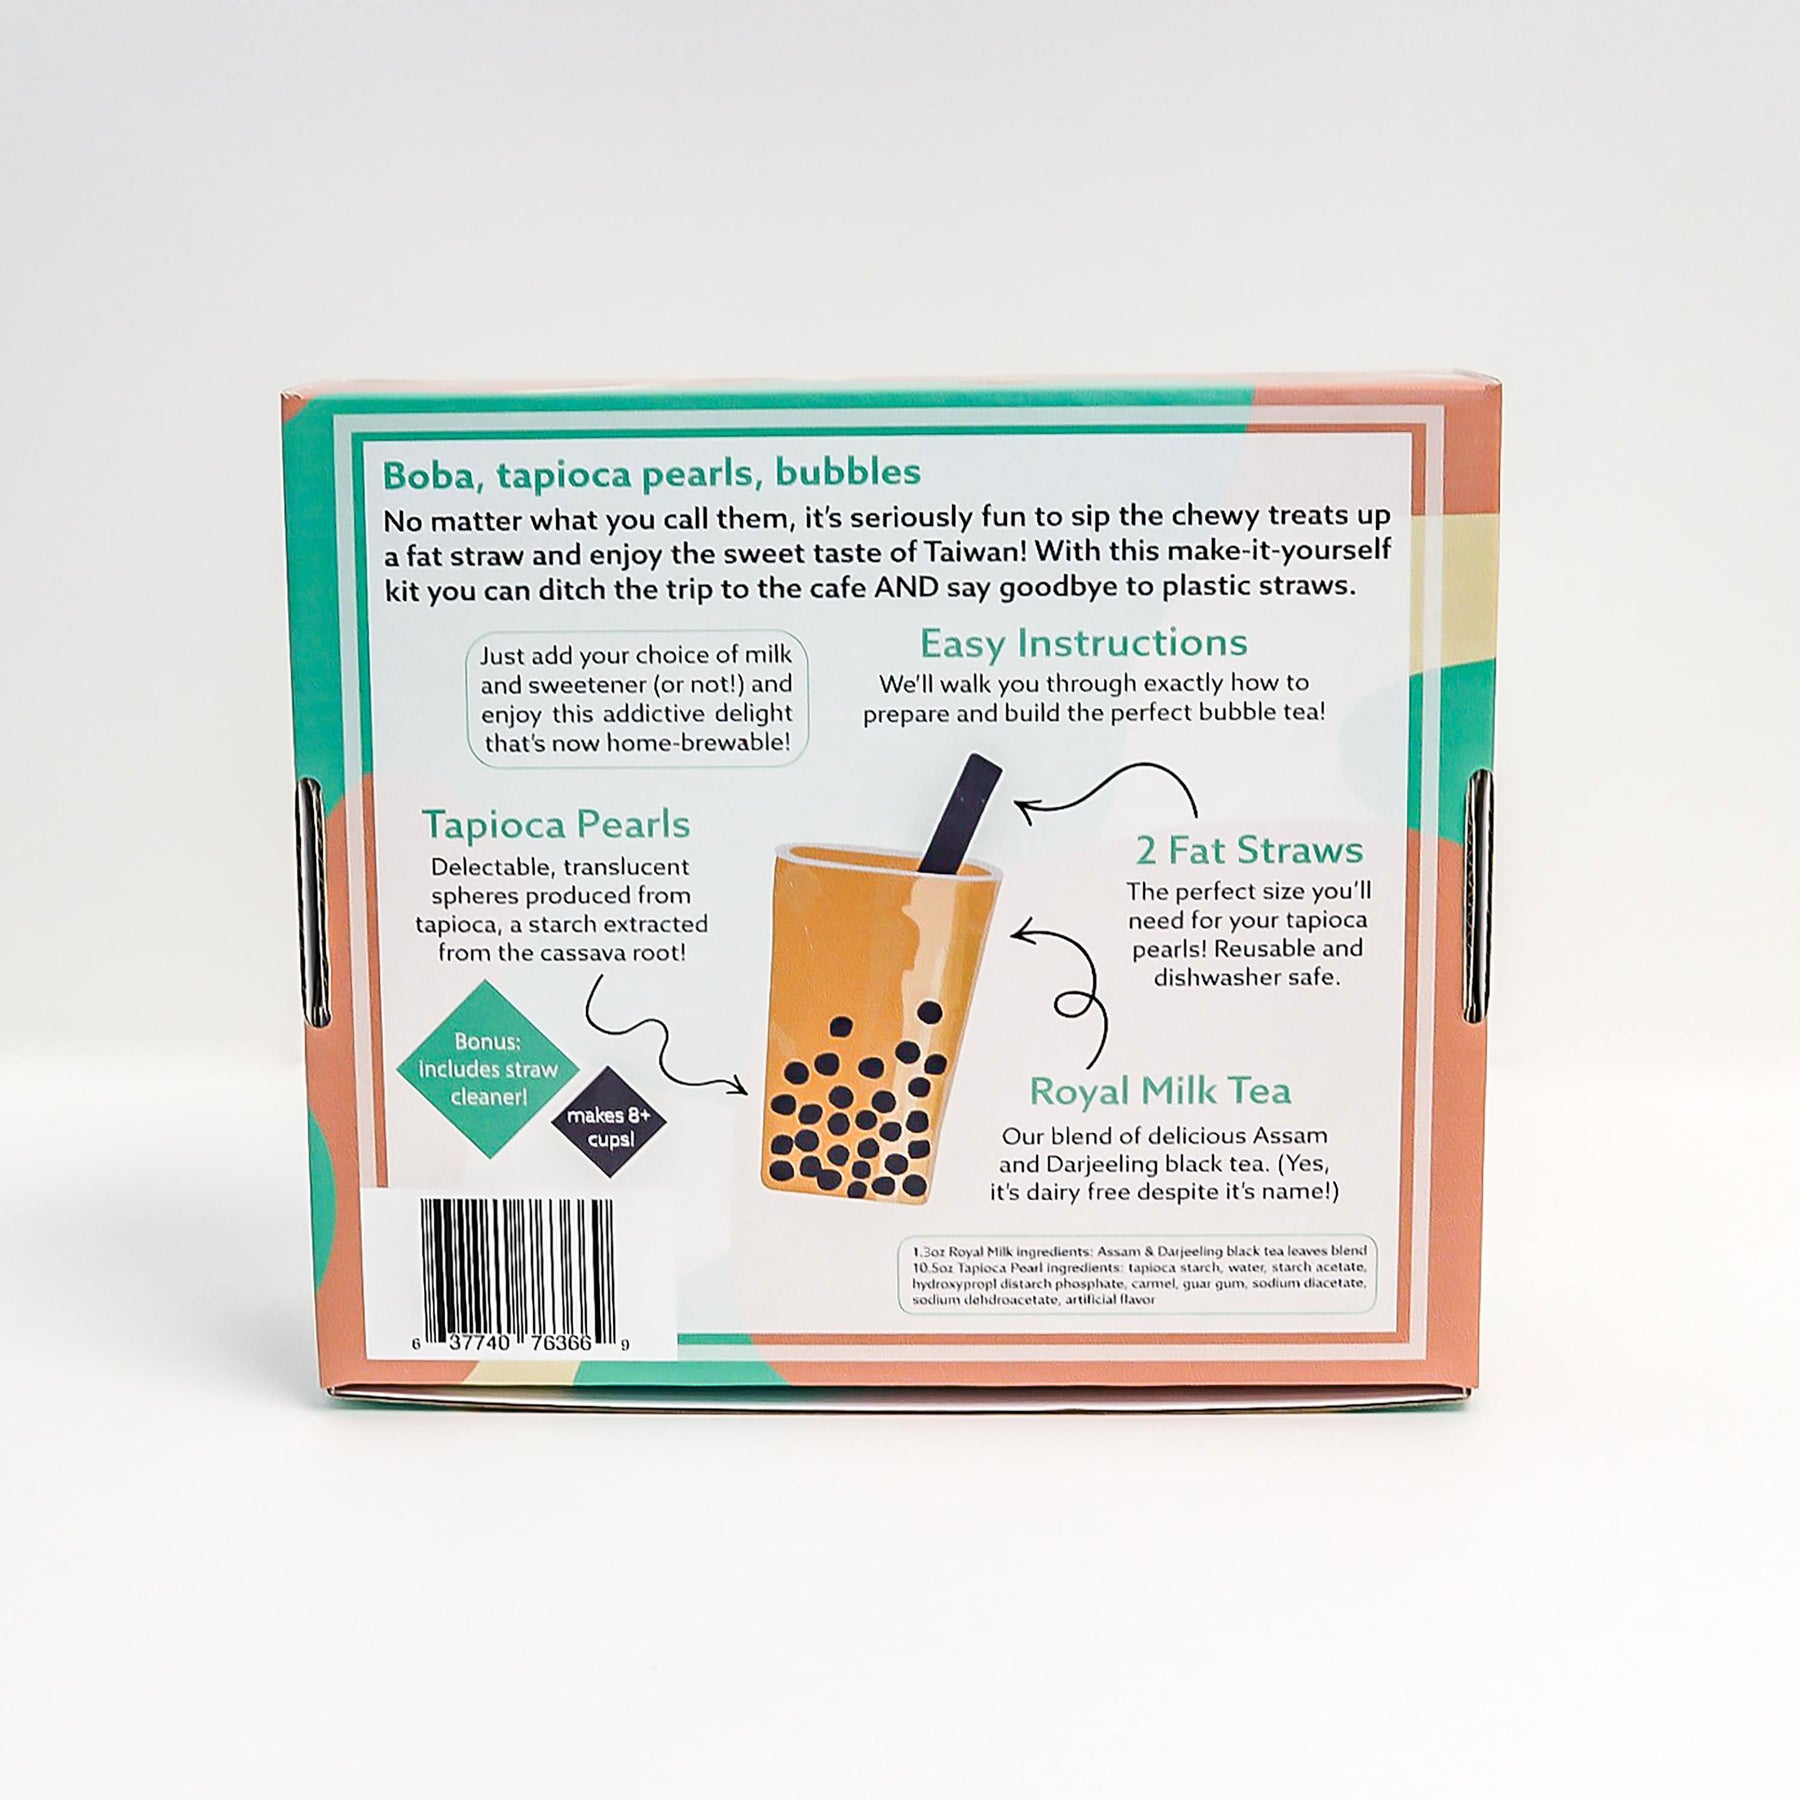 Bubble Tea Kit - DIY Boba Tea – Flavorpurveyor